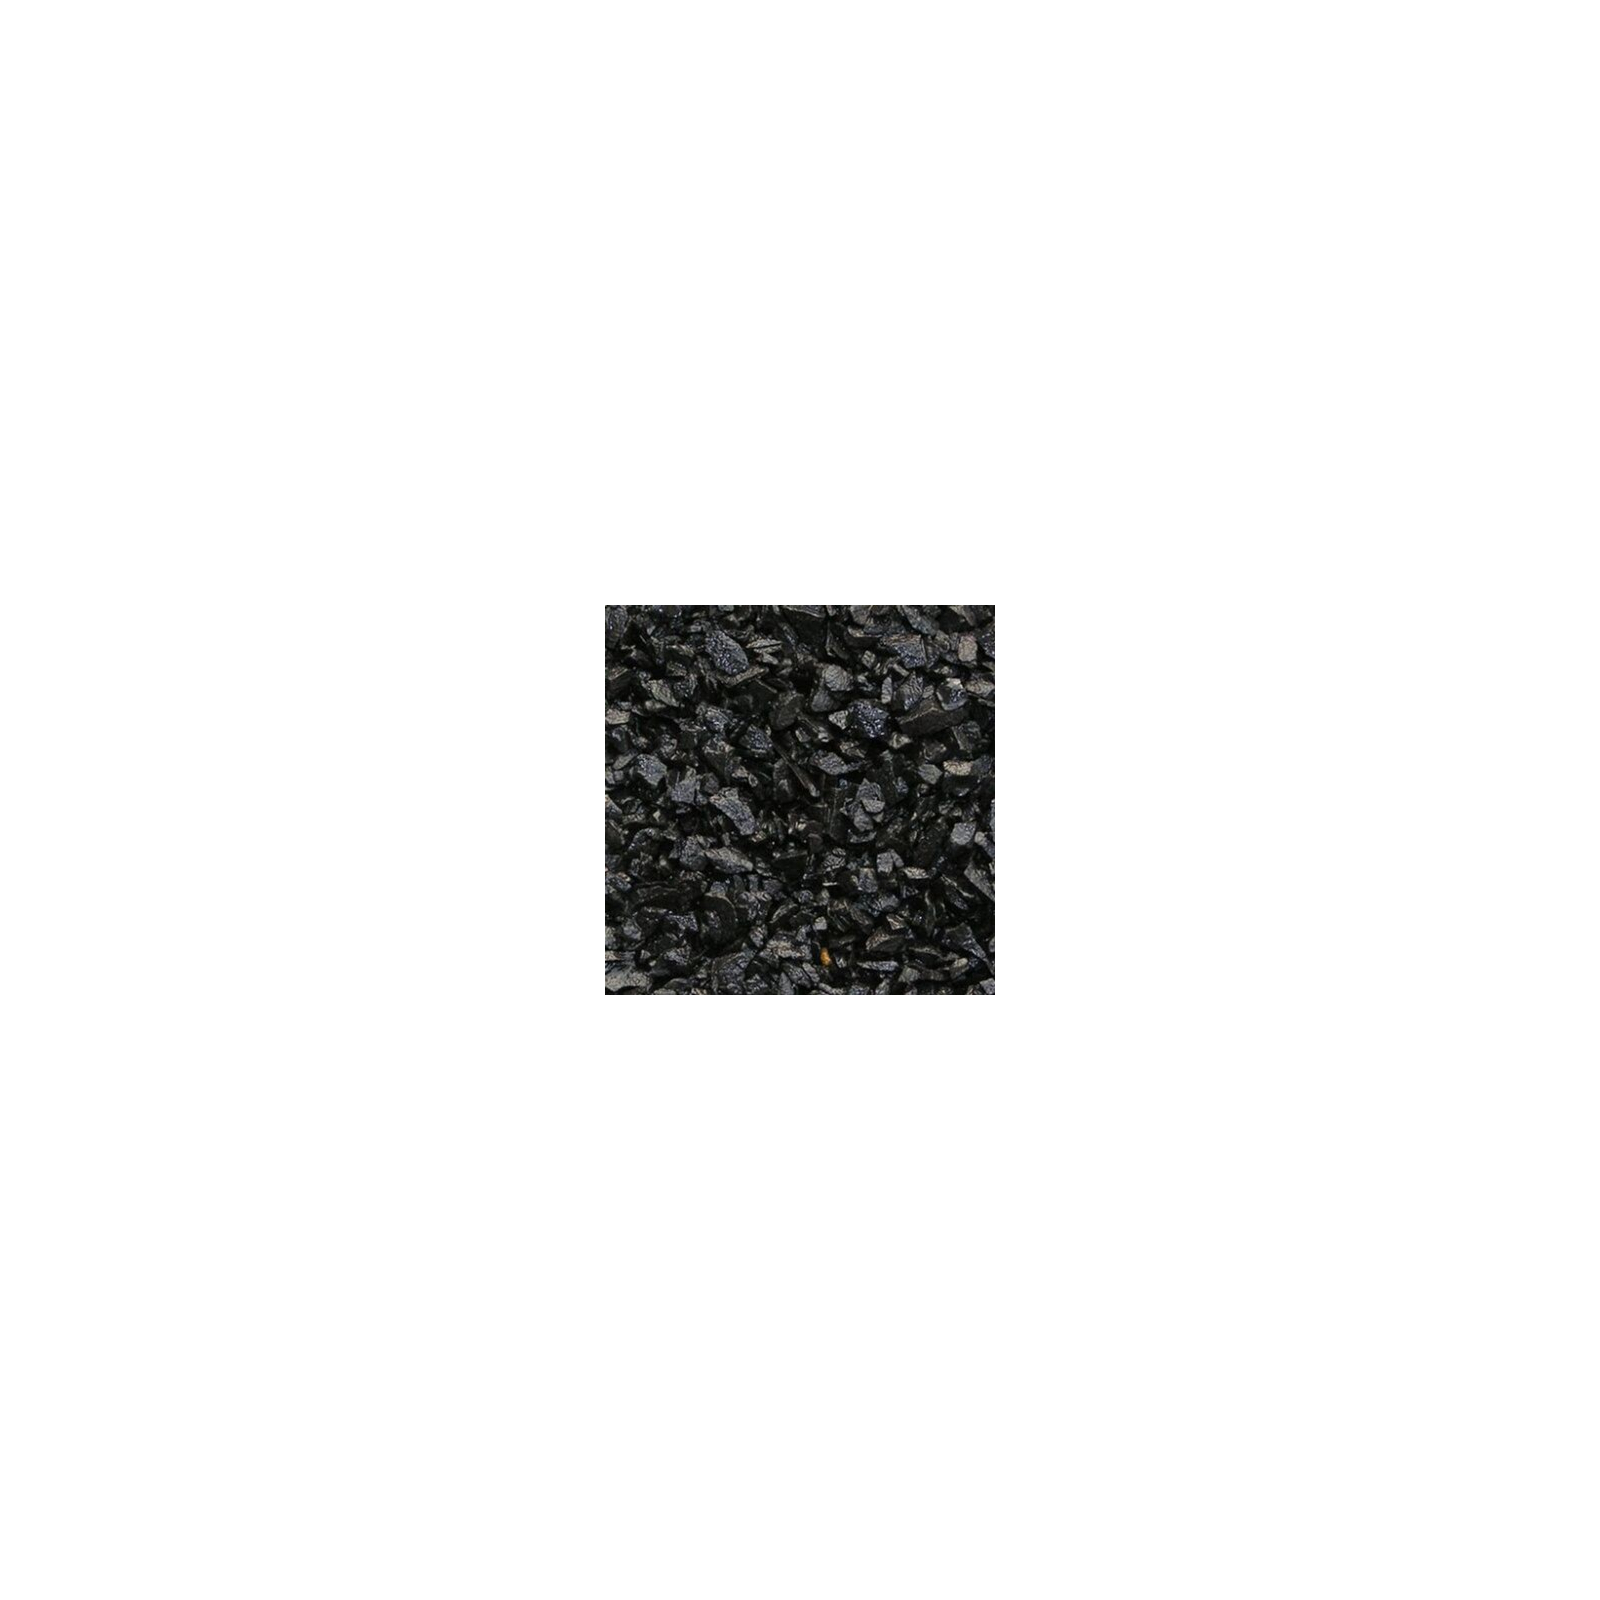 Ґрунт для акваріума Nechay Zoo чорний кристал 2 кг (2-5 мм) (2717250009339)